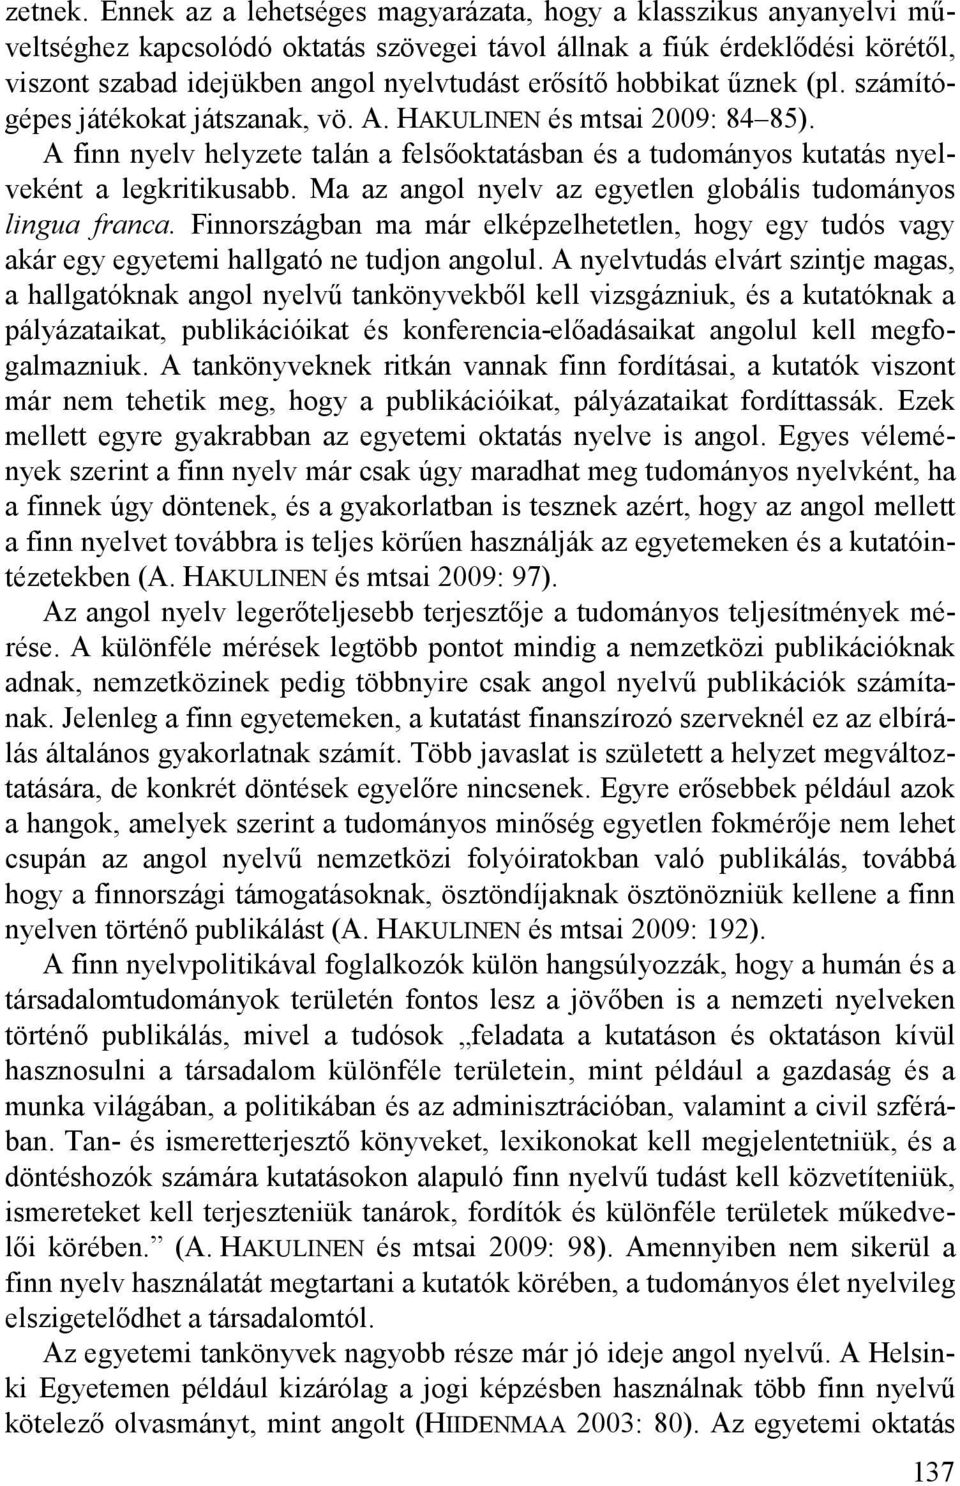 hobbikat űznek (pl. számítógépes játékokat játszanak, vö. A. HAKULINEN és mtsai 2009: 84 85). A finn nyelv helyzete talán a felsőoktatásban és a tudományos kutatás nyelveként a legkritikusabb.